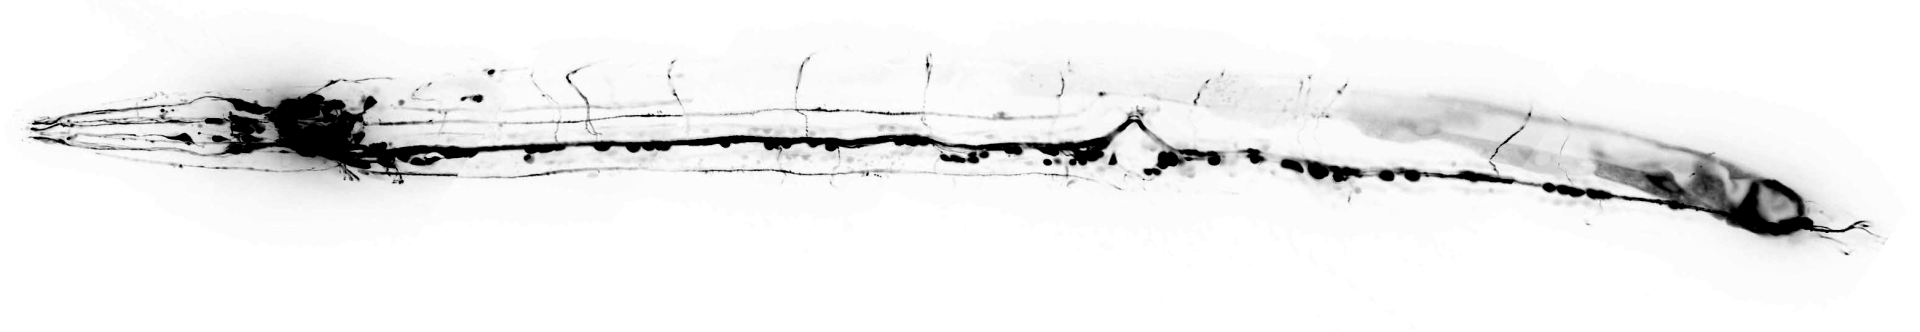 C-elegans cholinergic neurons LX929